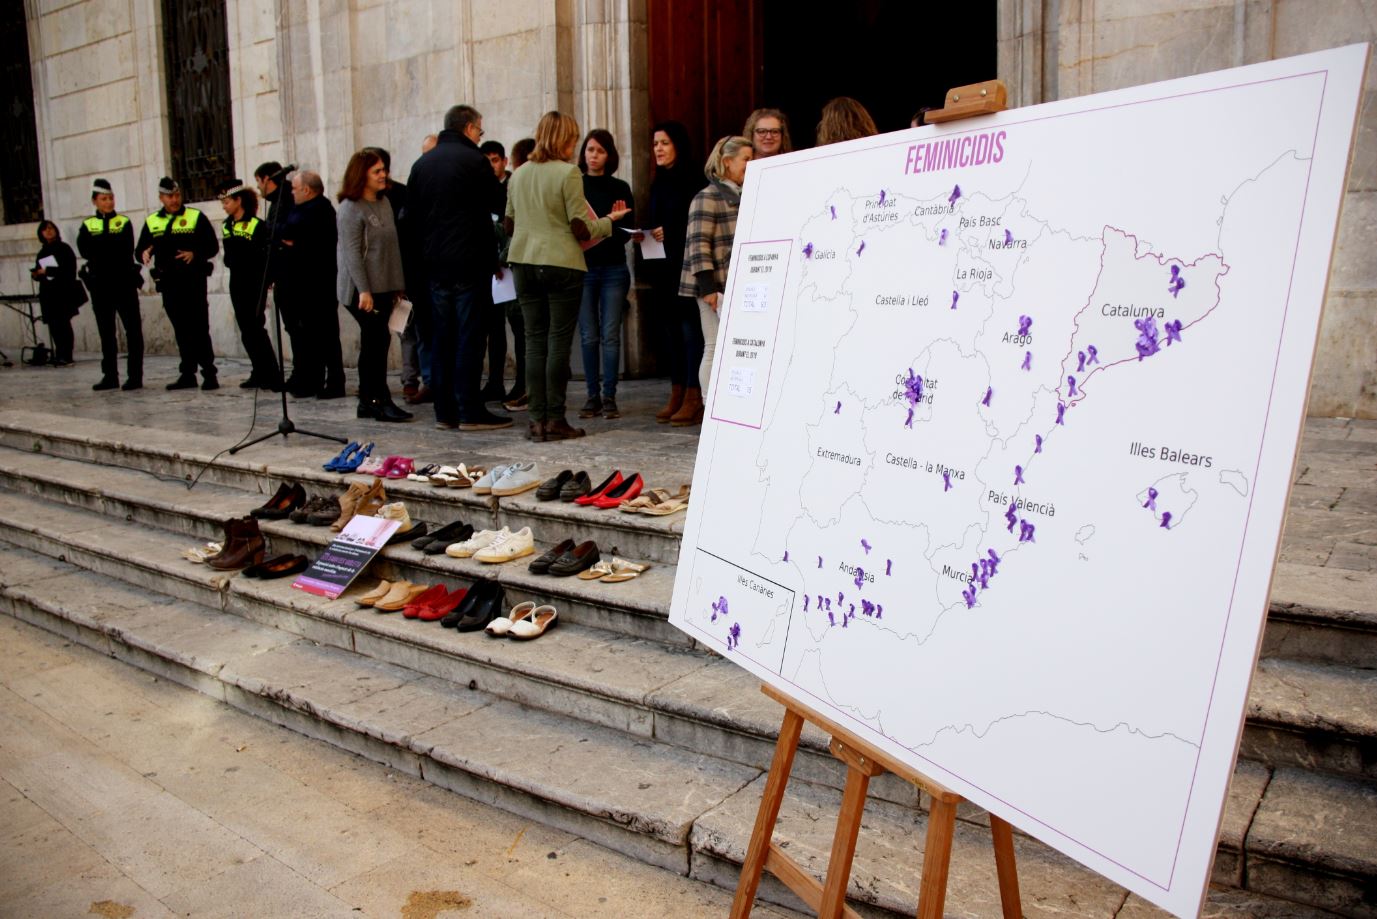 Conselleres de l'Ajuntament llegeixen un manifest i s'exhibeix un mapa amb llaços per mostrar els feminicidis del 2019